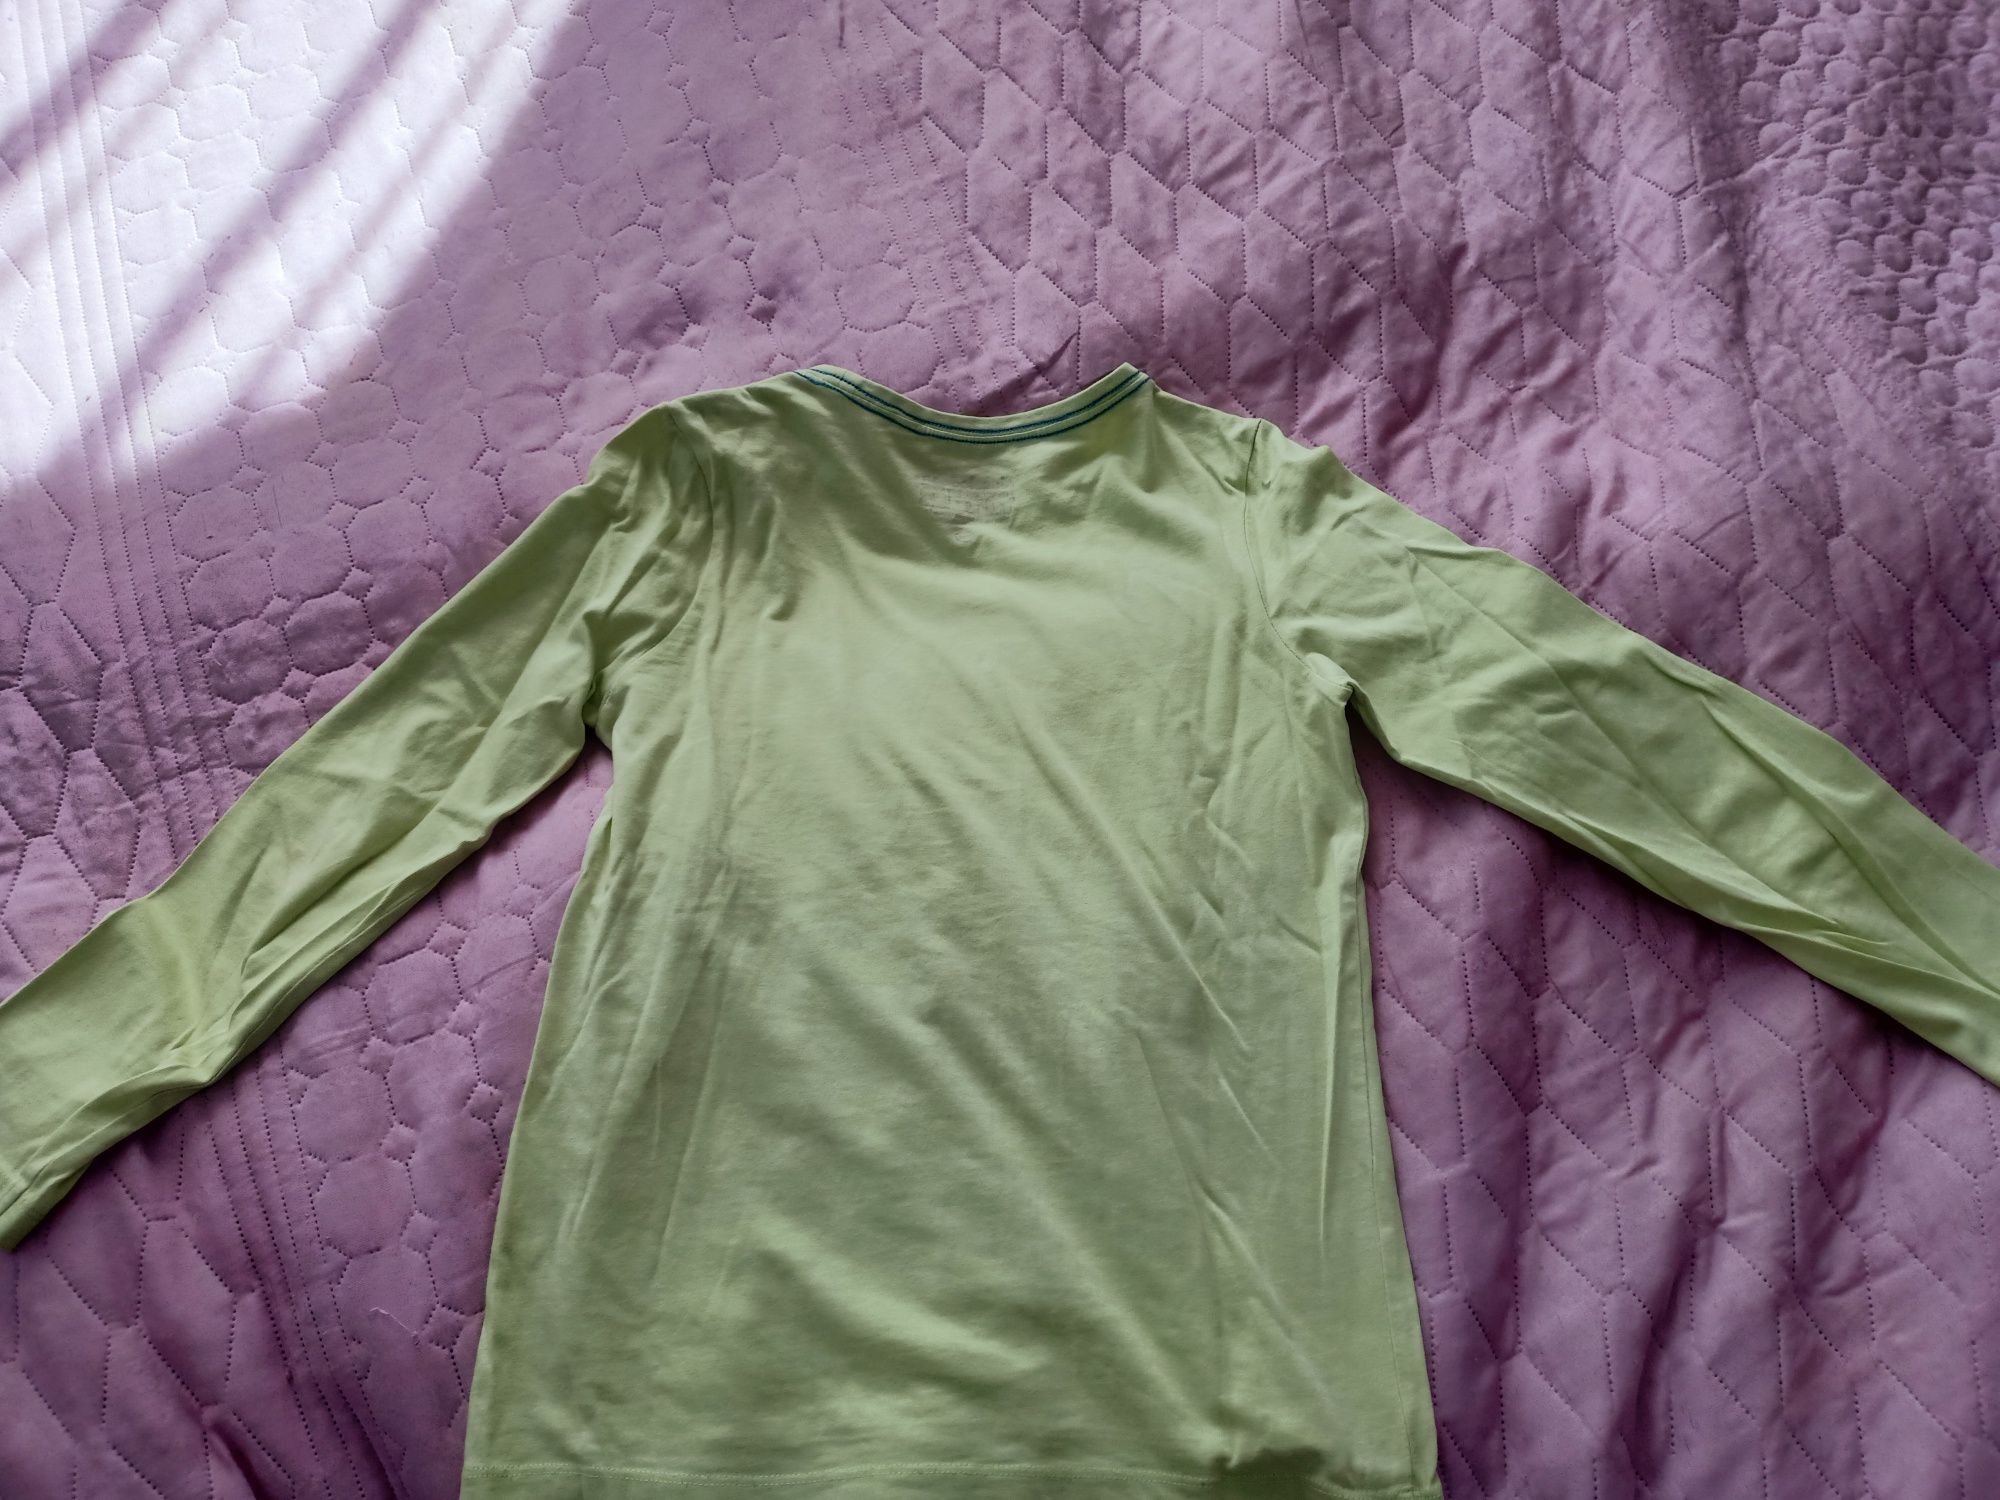 2 koszulki, bluzki na dł. rękaw dla chłopca w rozm. 134 cm